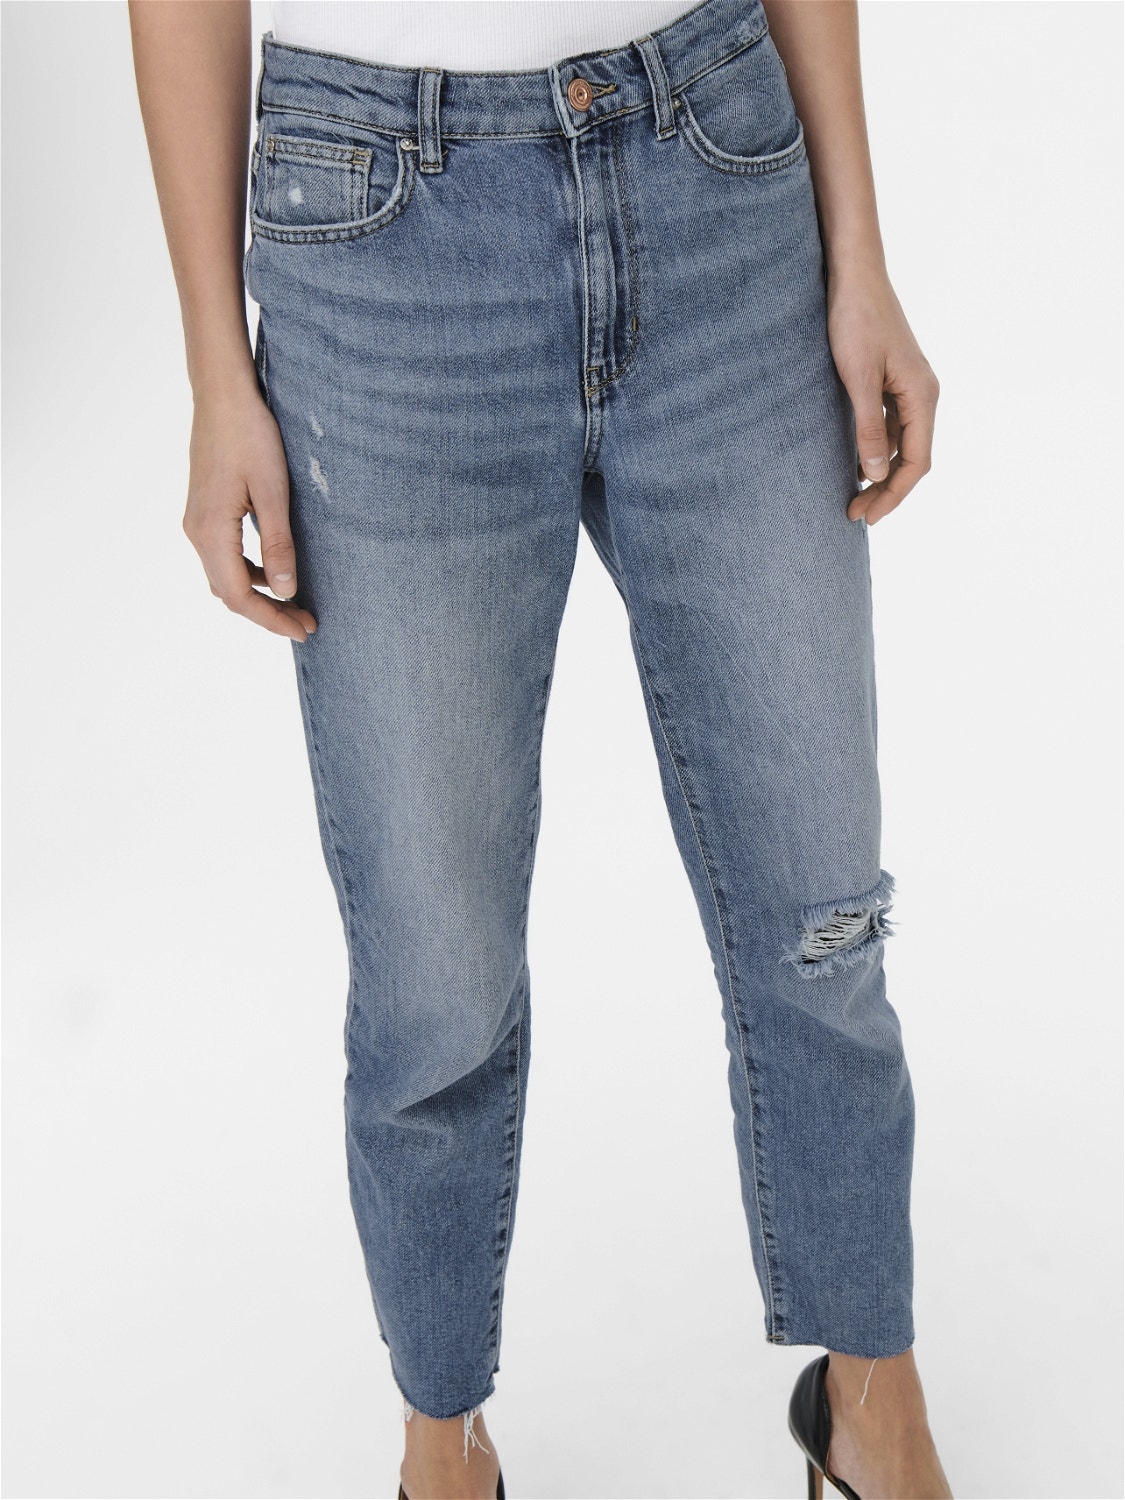 ONLY Gerade geschnitten Hohe Taille Offener Saum Jeans -Light Medium Blue Denim - 15248661